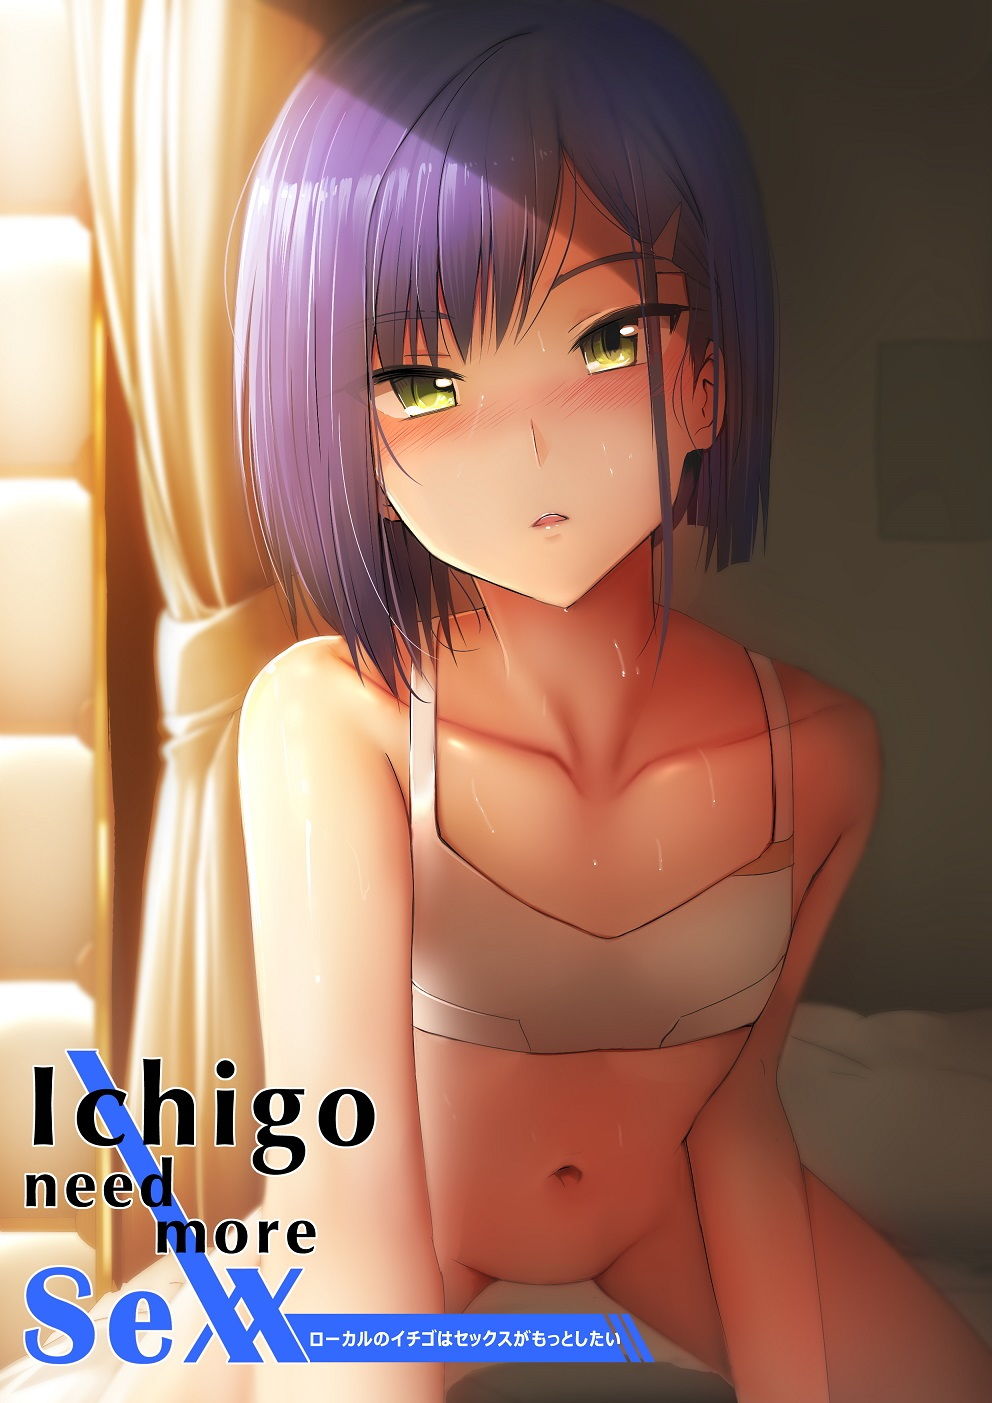 Ichigo need more sexx_2